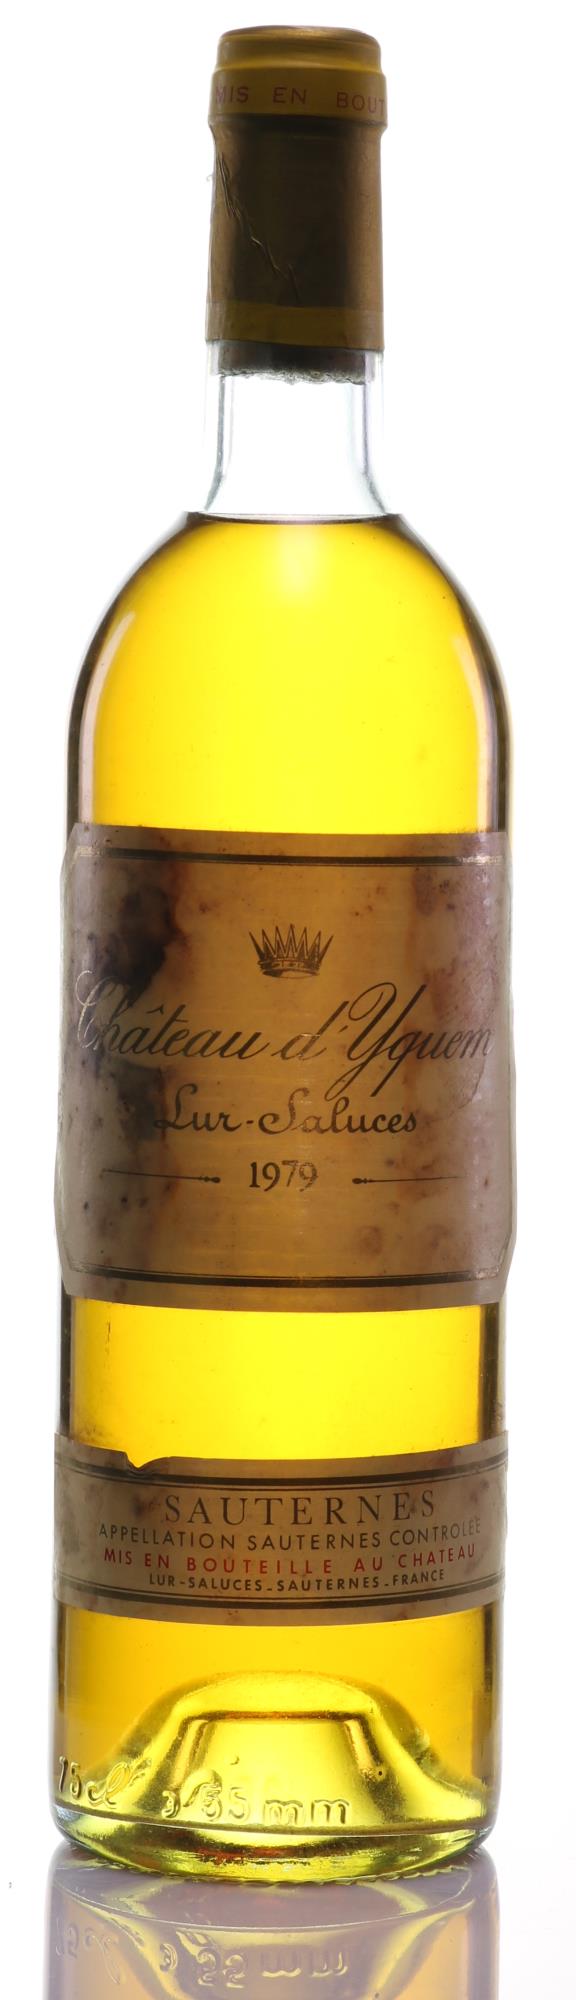 1979 Chateau d'Yquem Lur-Saluces Sauternes Supérieur Dessert Wine - Rue Pinard